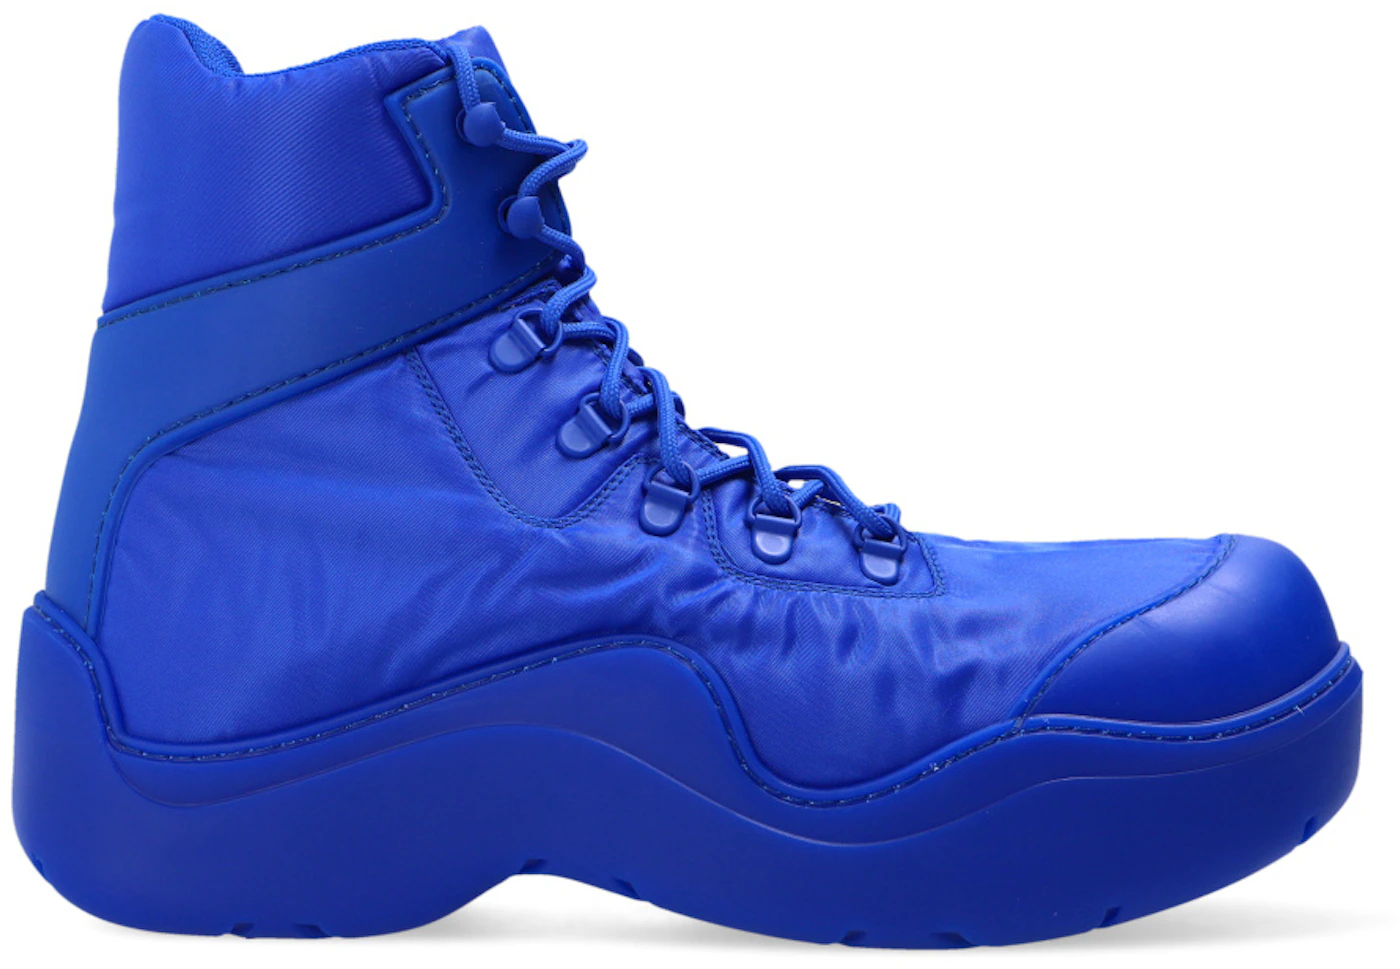 Bottega Veneta Puddle Bomber Ankle Boot Blue Men's - 667064VBSD74209 - US